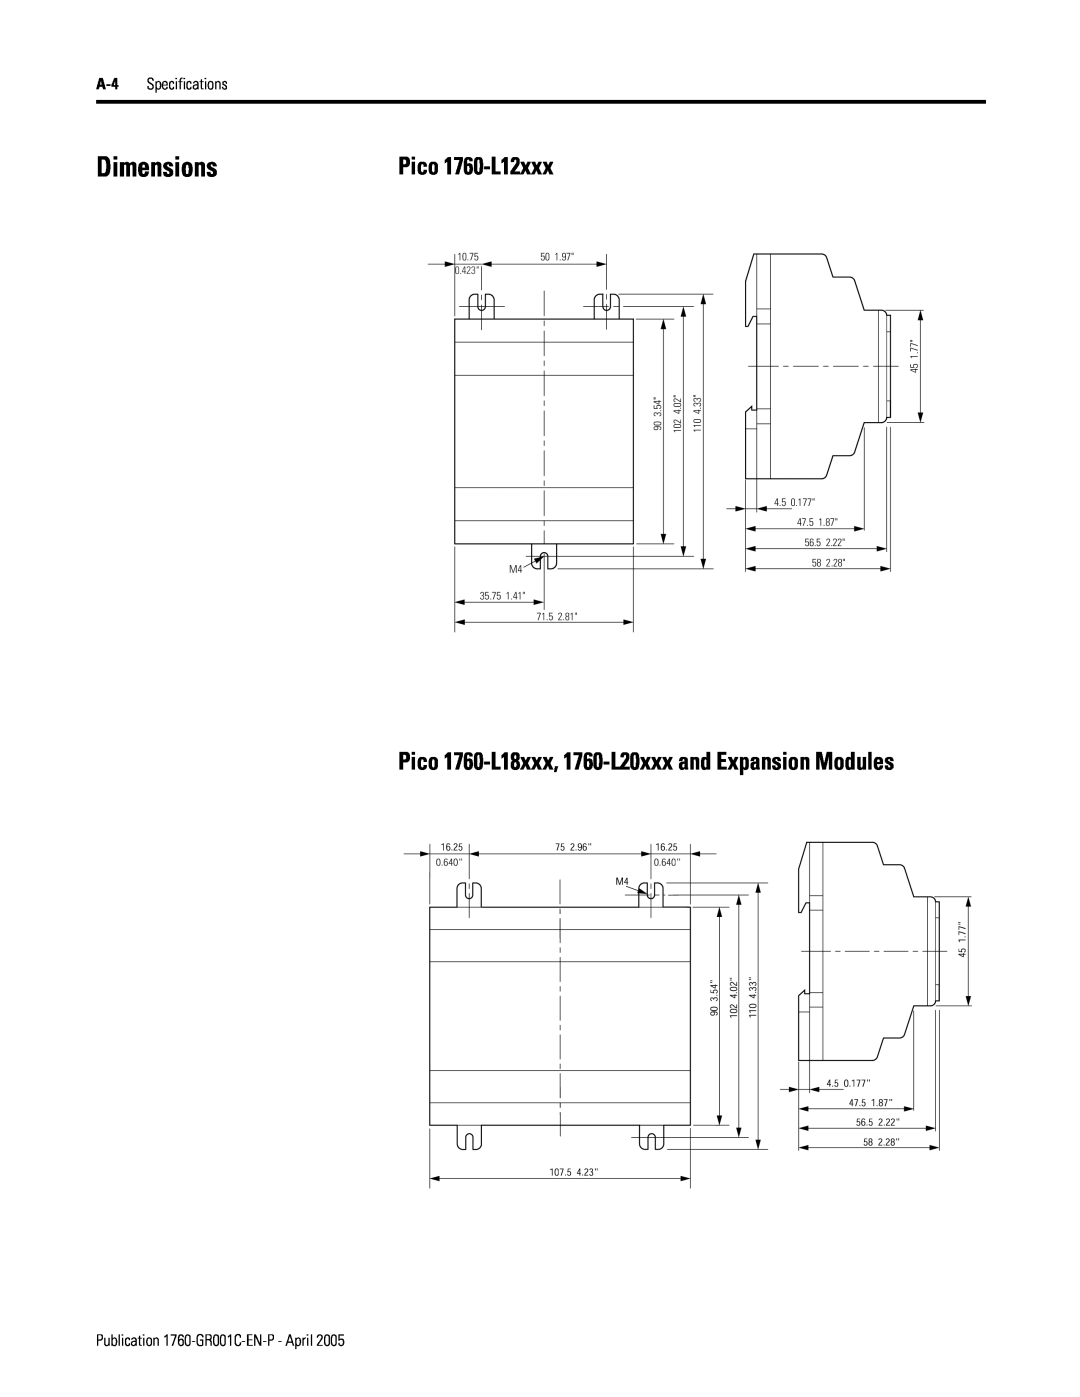 AB Soft manual Dimensions, 107.5, 541.77, 0.64016.25, A-4 Specifications, Publication 1760-GR001C-EN-P - April 